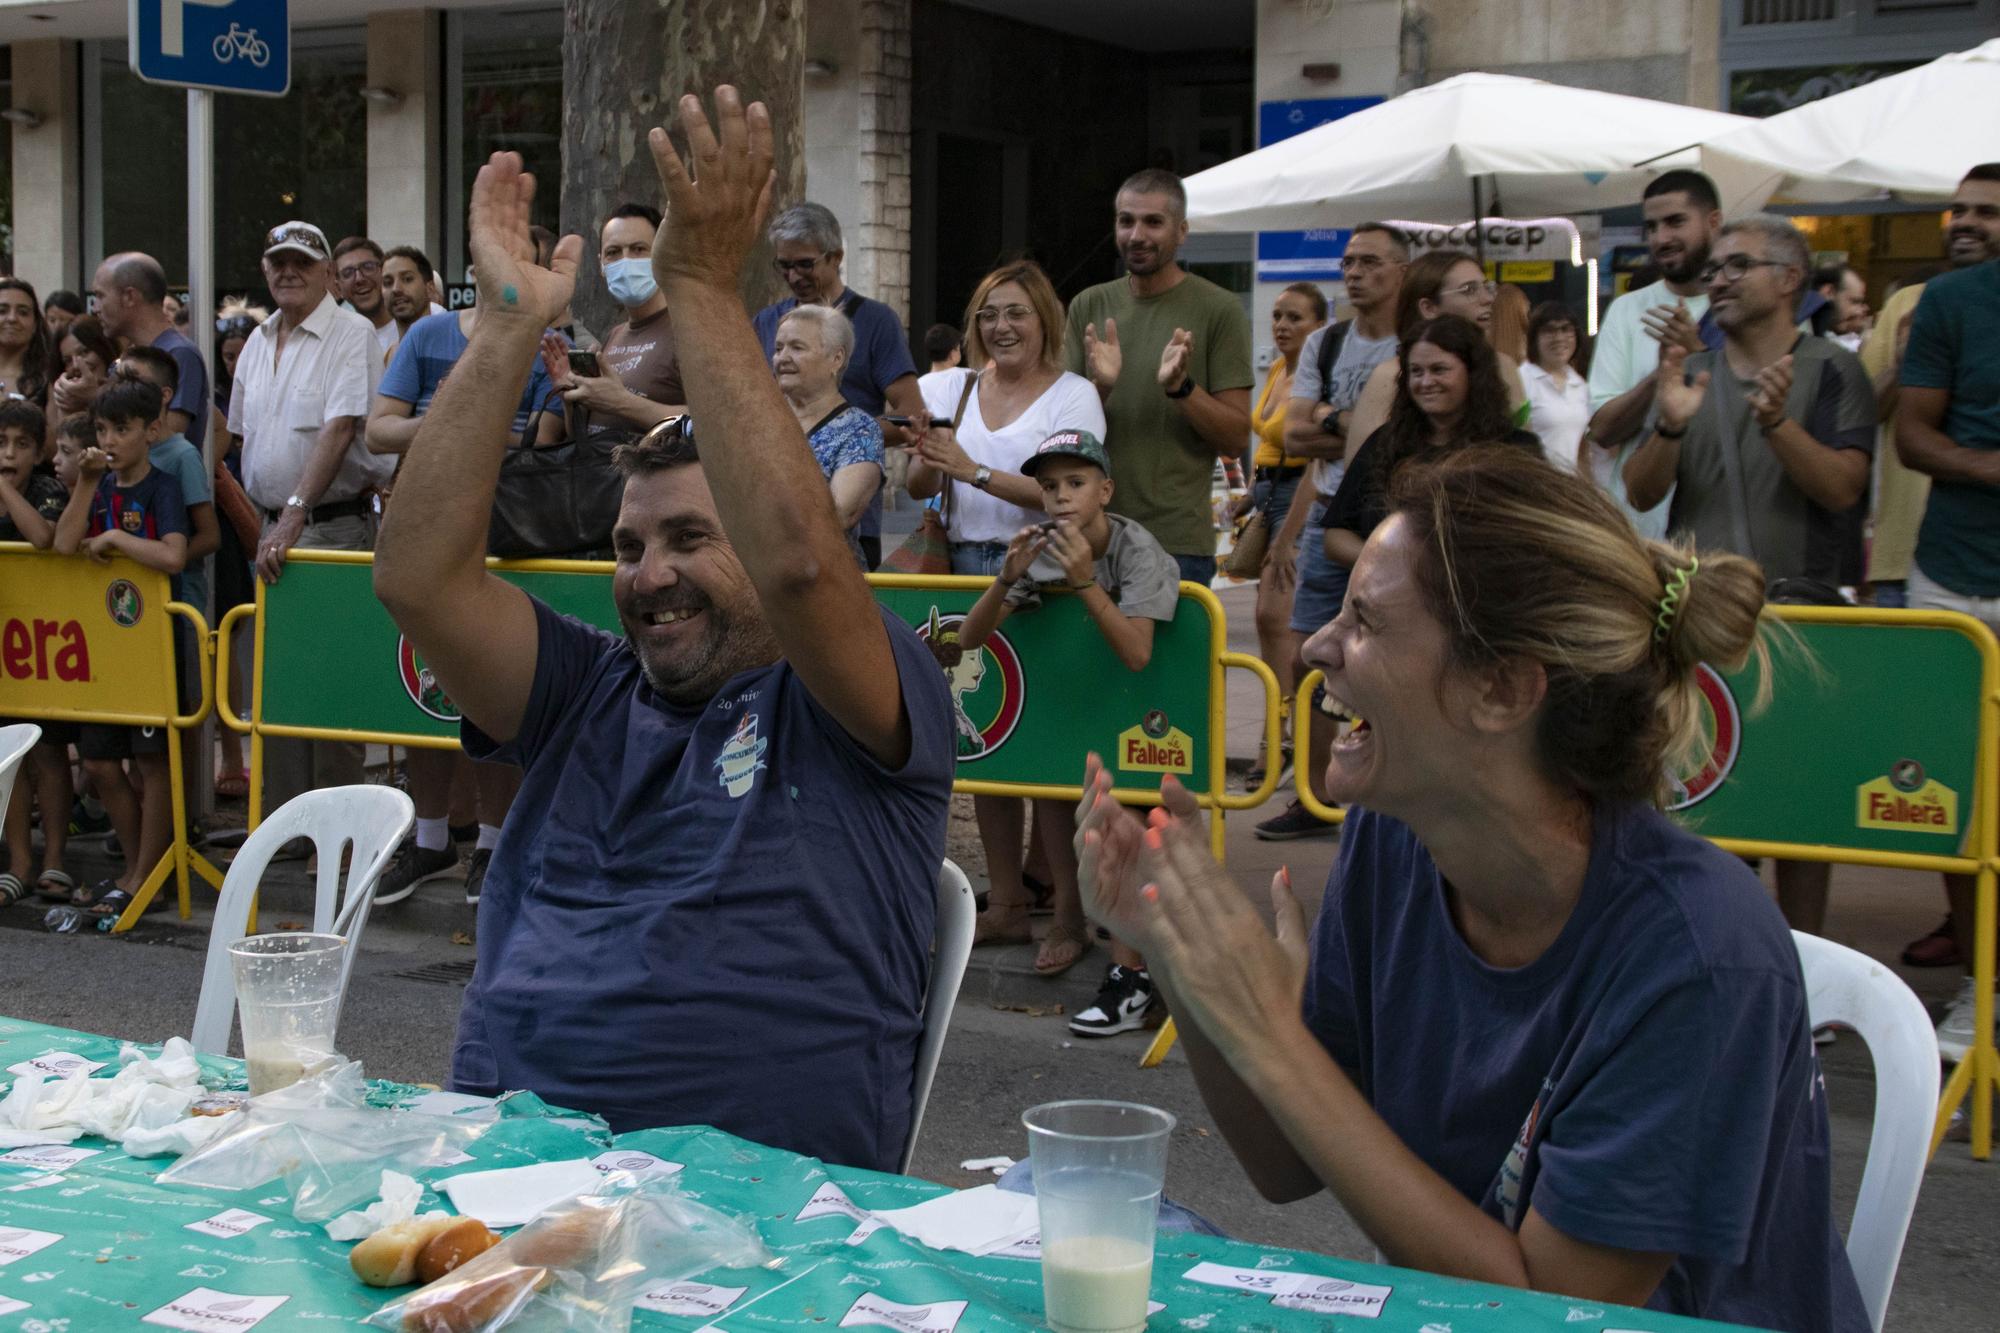 El concurso de comer fartons llena de nuevo l'Albereda de Xàtiva